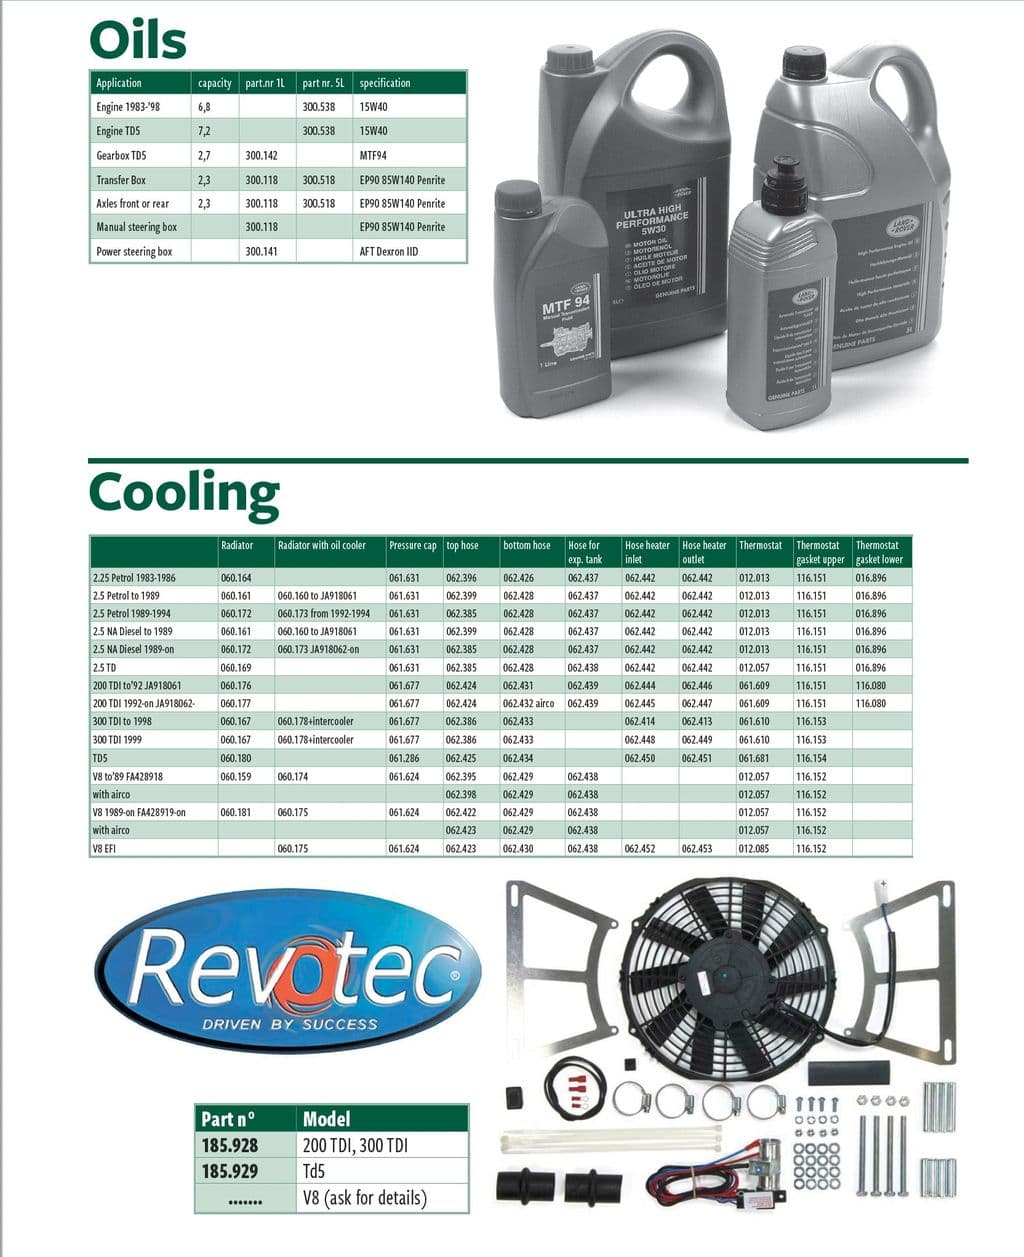 Oils & cooling - Cooling system - Engine cooling - Land Rover Defender 90-110 1984-2006 - Oils & cooling - 1